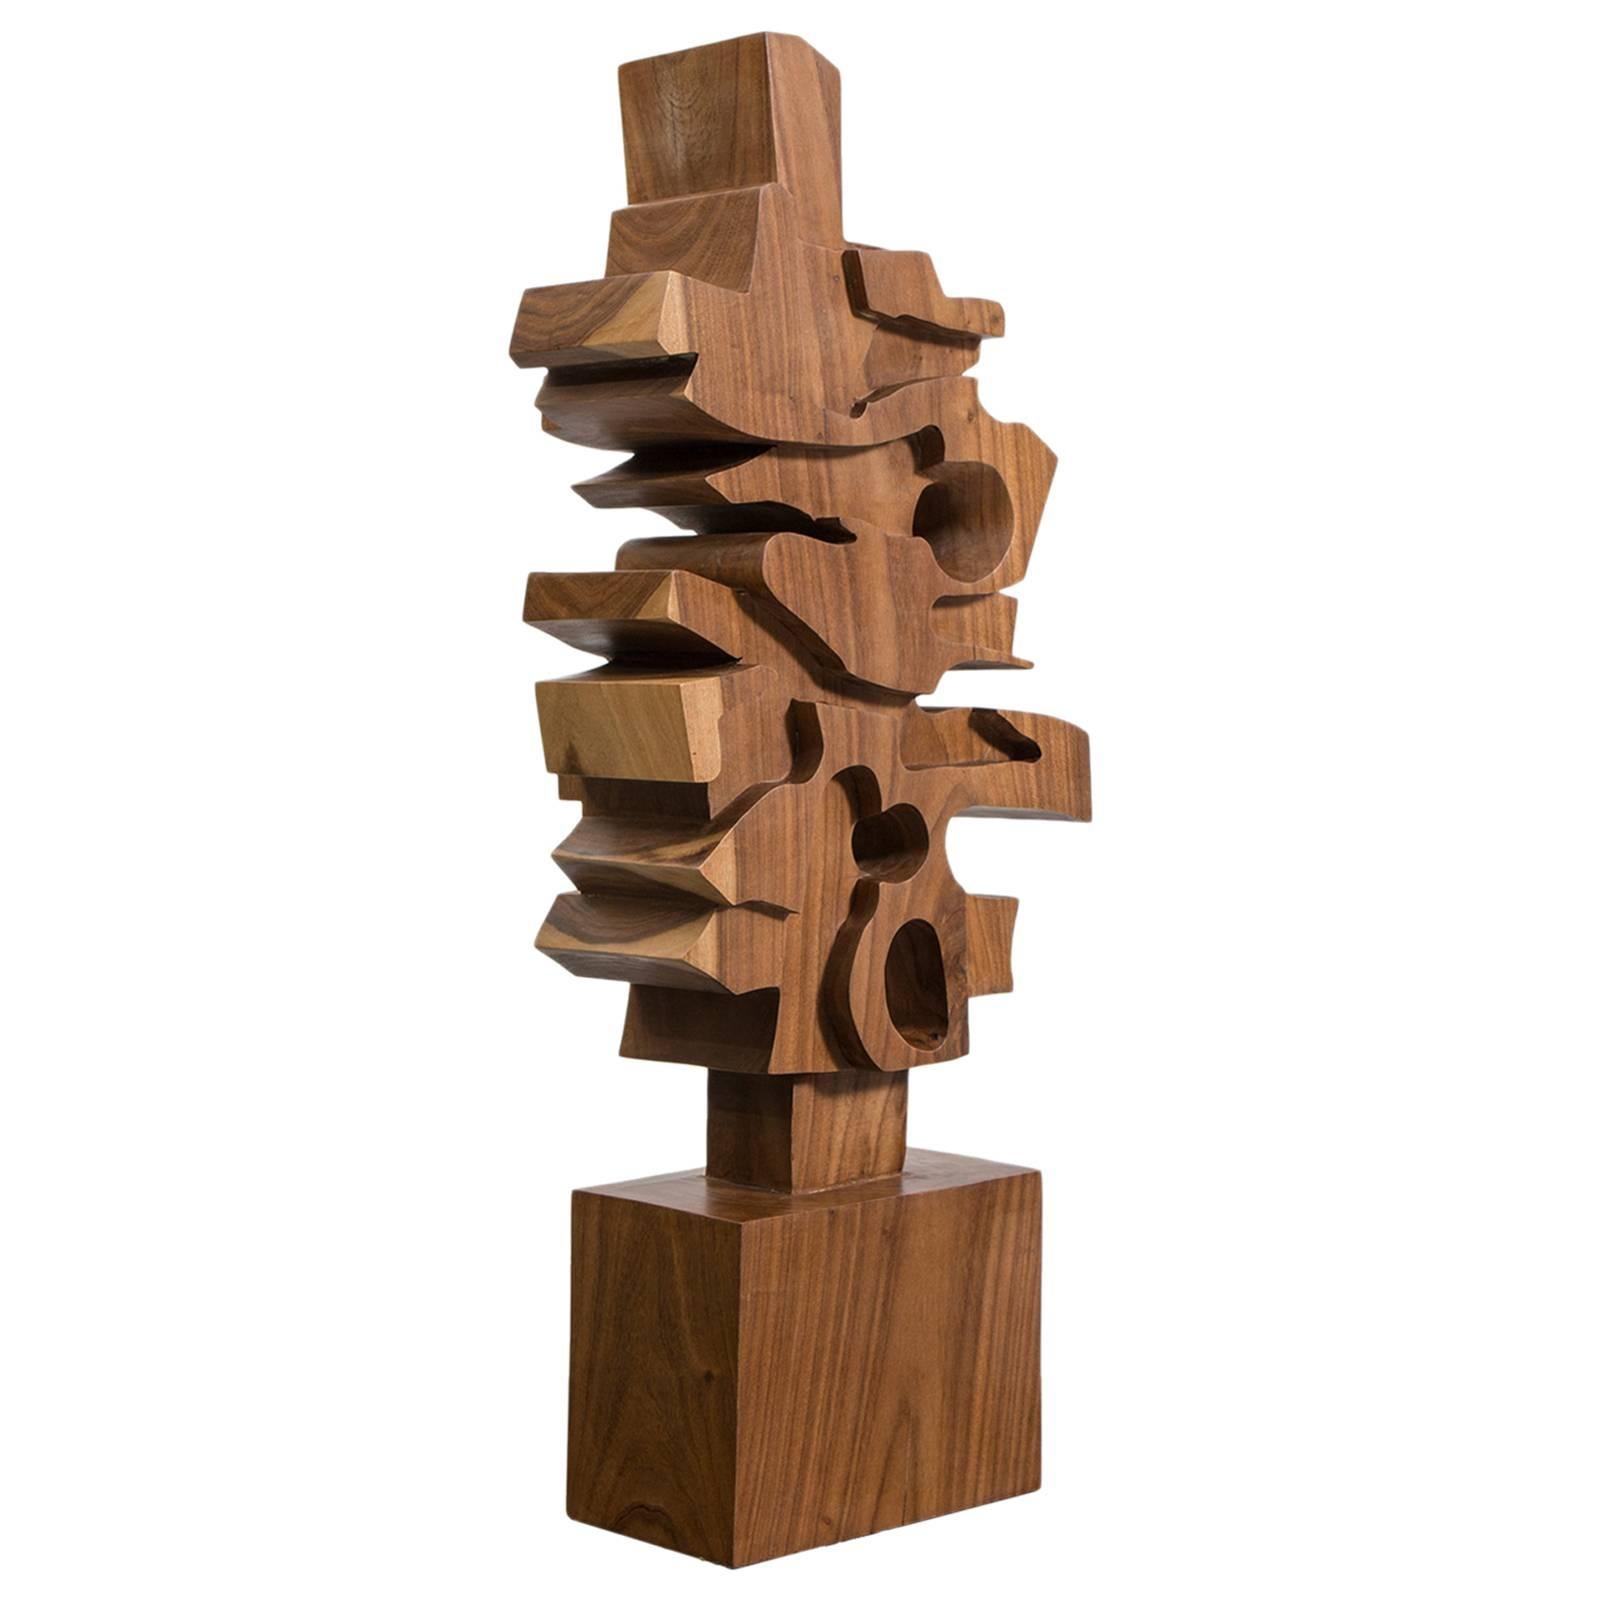 Hand-Carved Wooden Sculpture by Gabriela Valenzuela-Hirsch